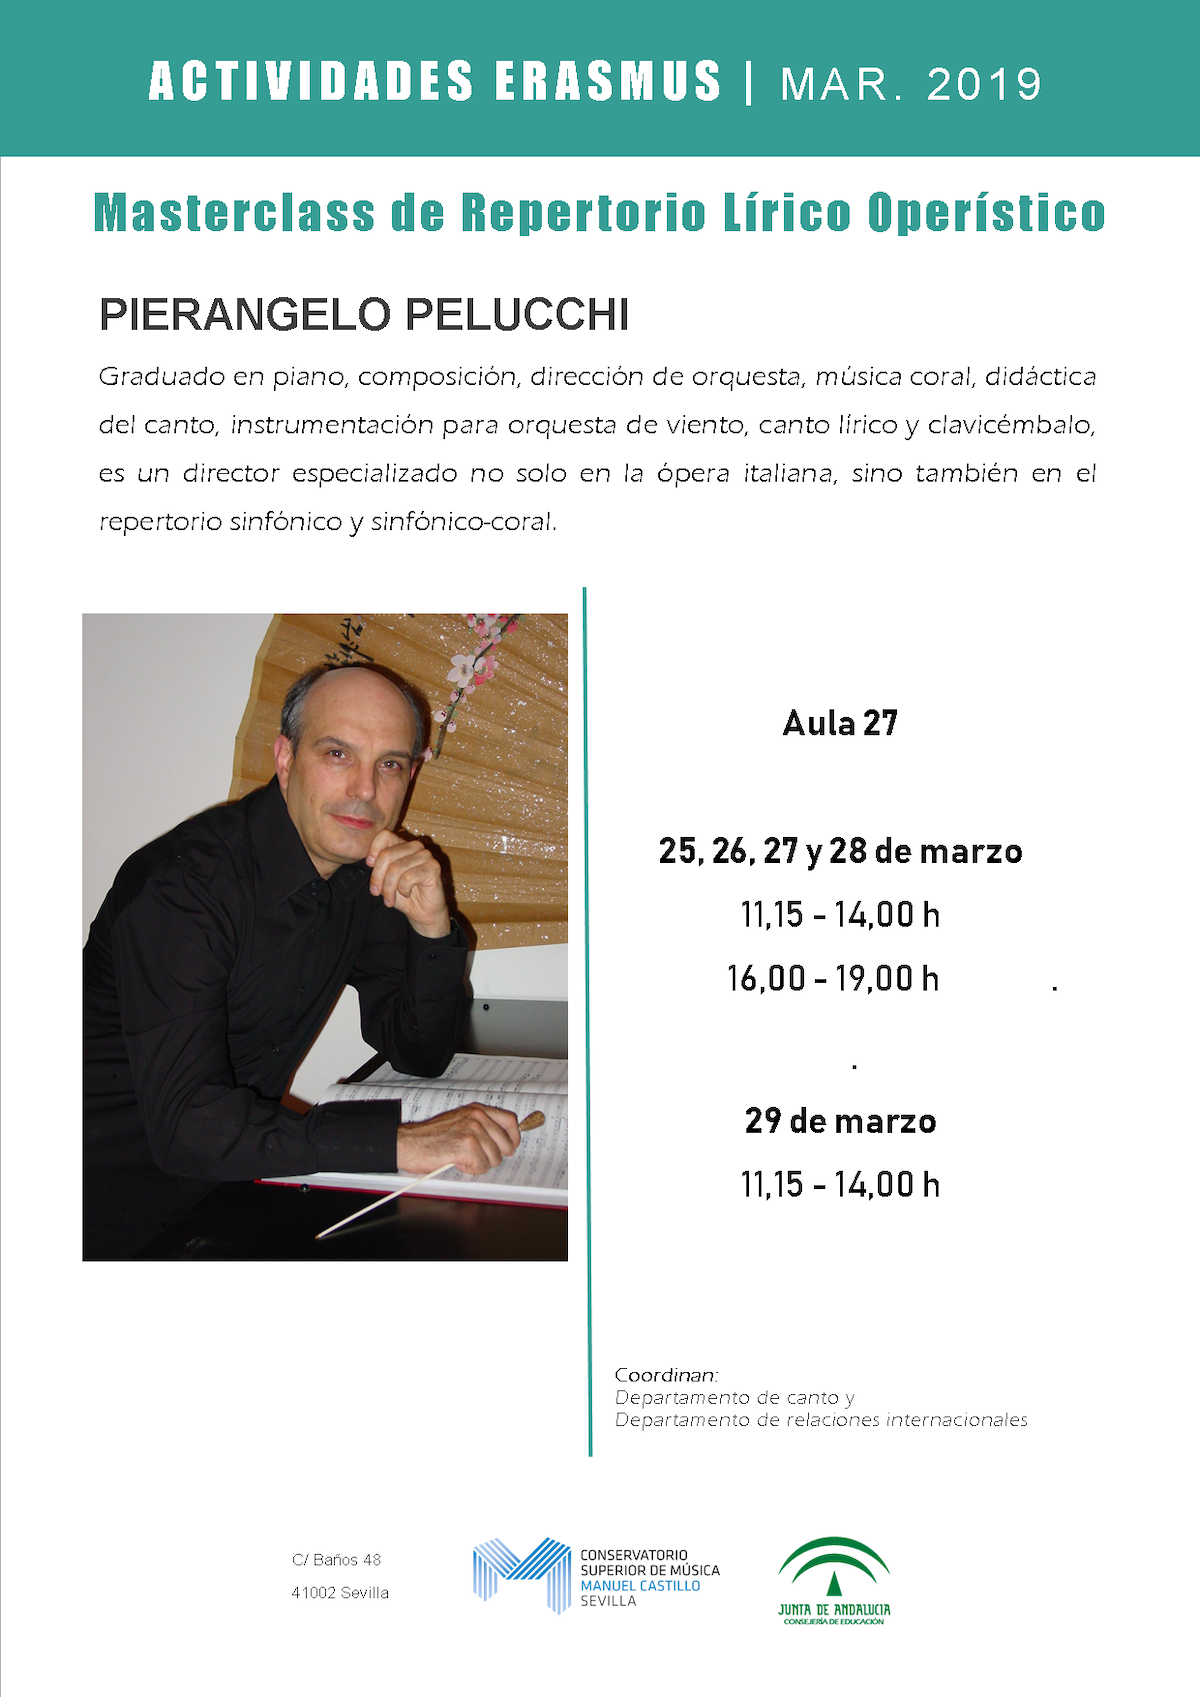 Clase magistral de repertorio lírico operístico — PierAngelo Pelucchi